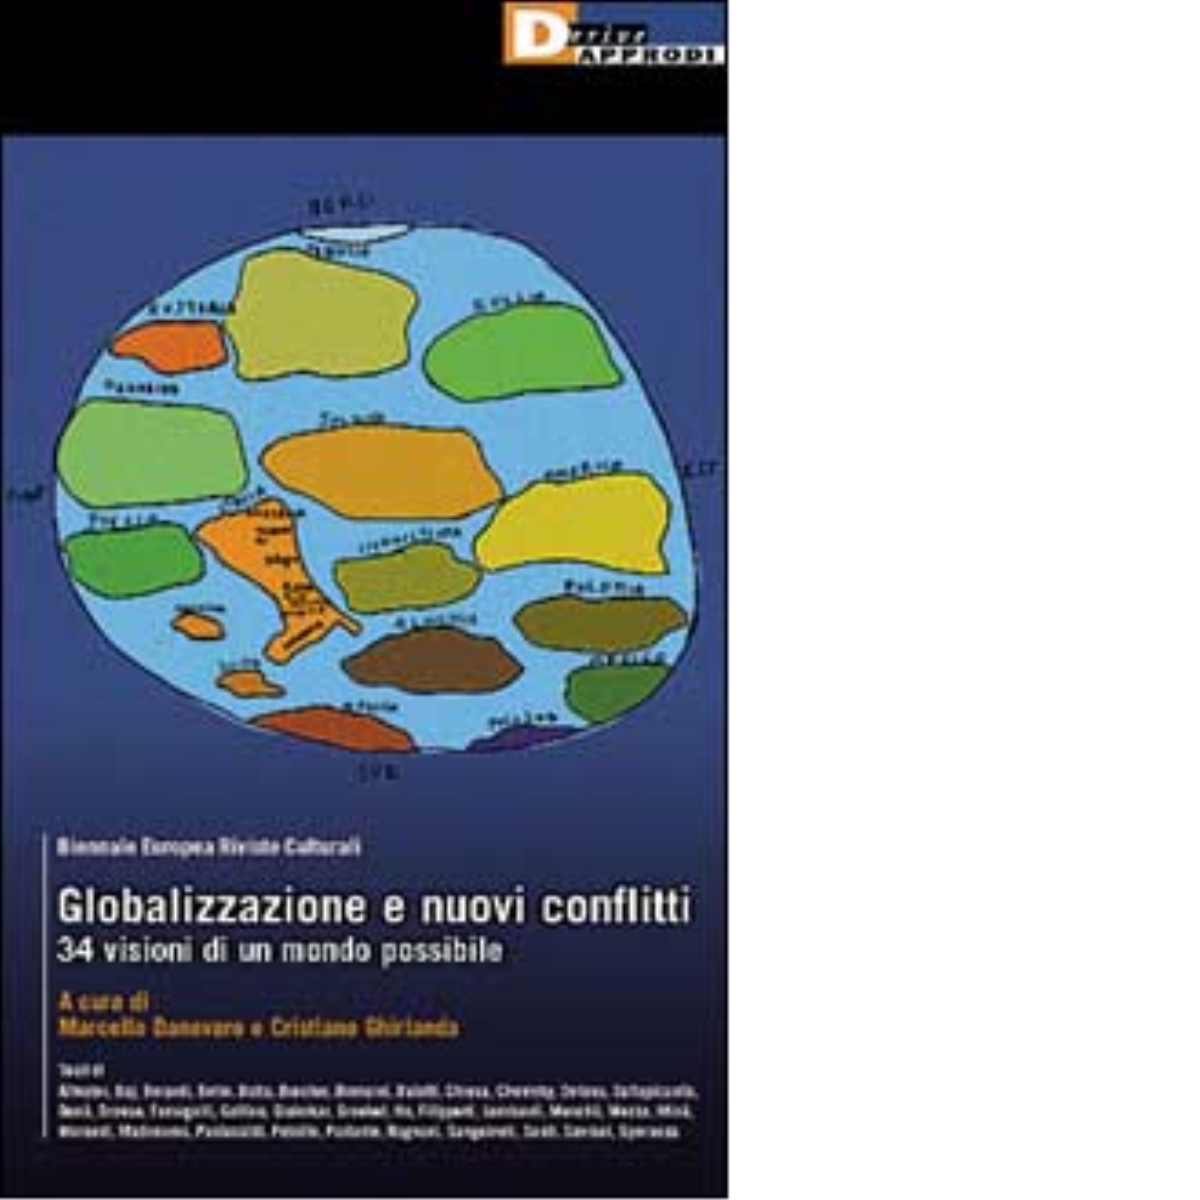 GLOBALIZZAZIONE E NUOVI CONFLITTI di AA.VV. - DeriveApprodi editore, 2002